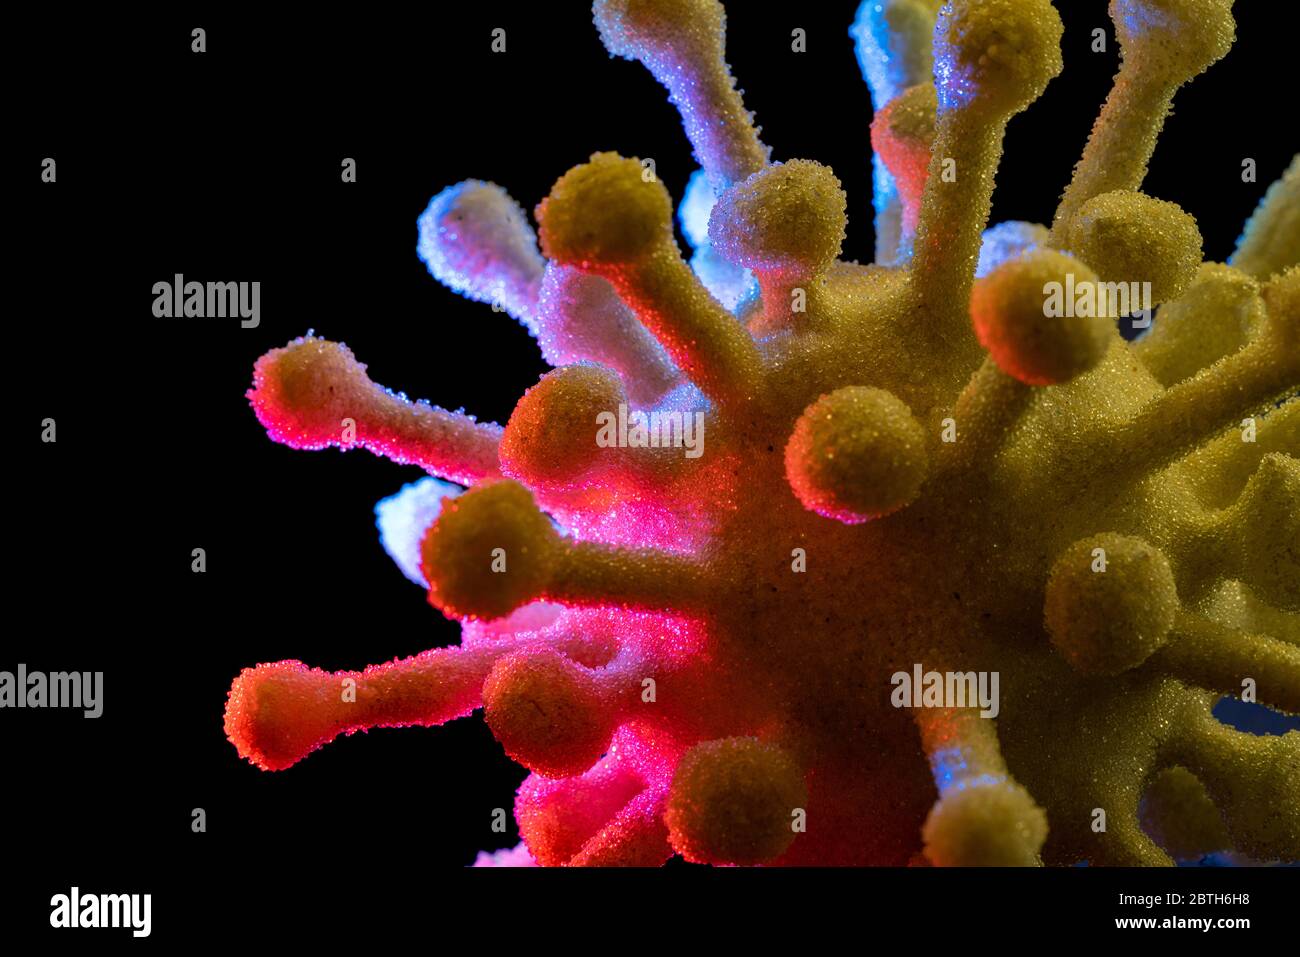 dettaglio di un colorato virus simbolico illuminato nel buio posteriore Foto Stock